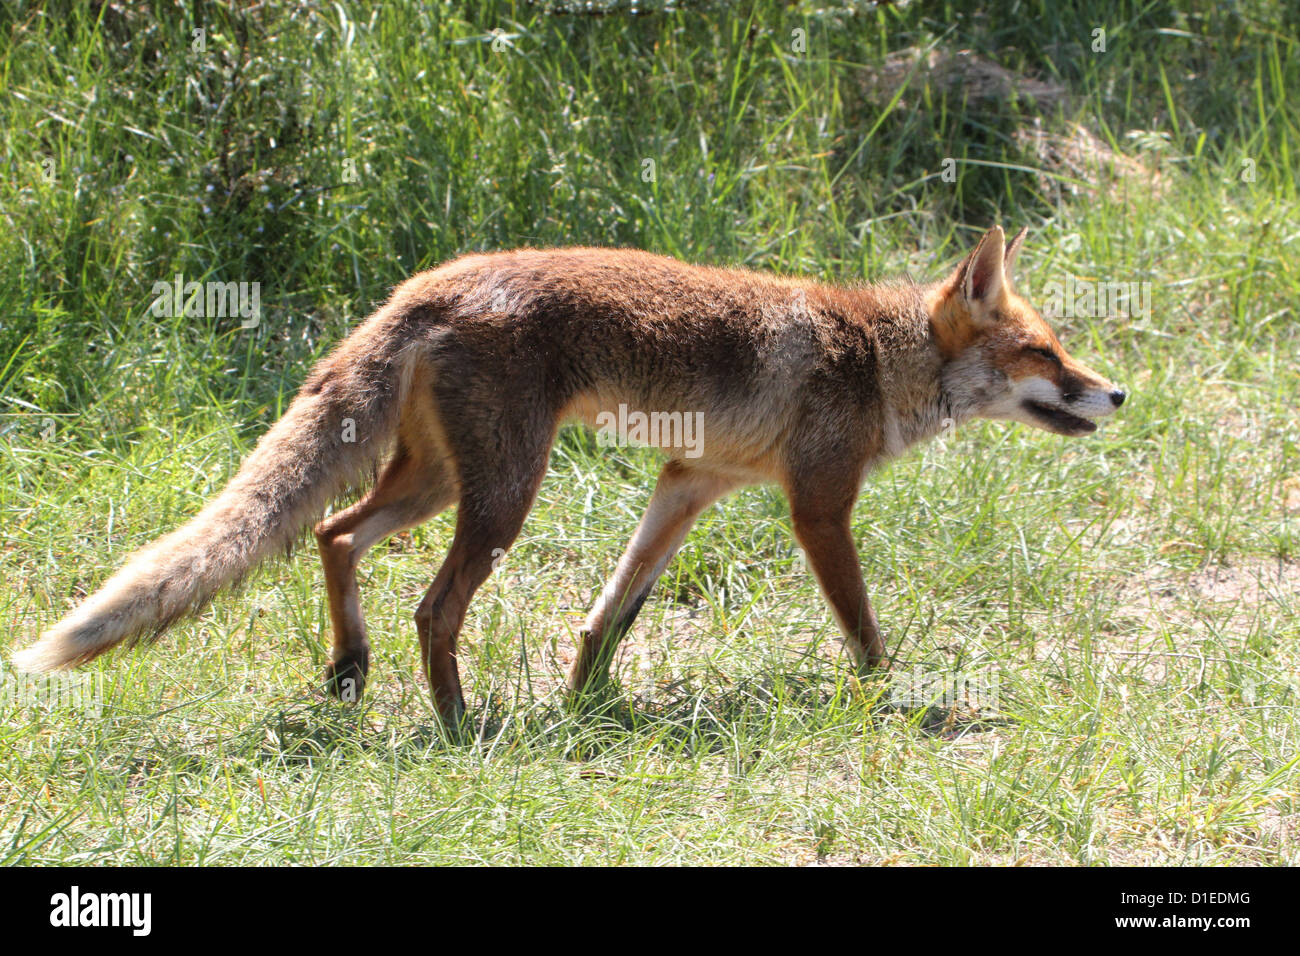 Salvaje Europa zorro rojo (Vulpes vulpes) en el acecho Foto de stock